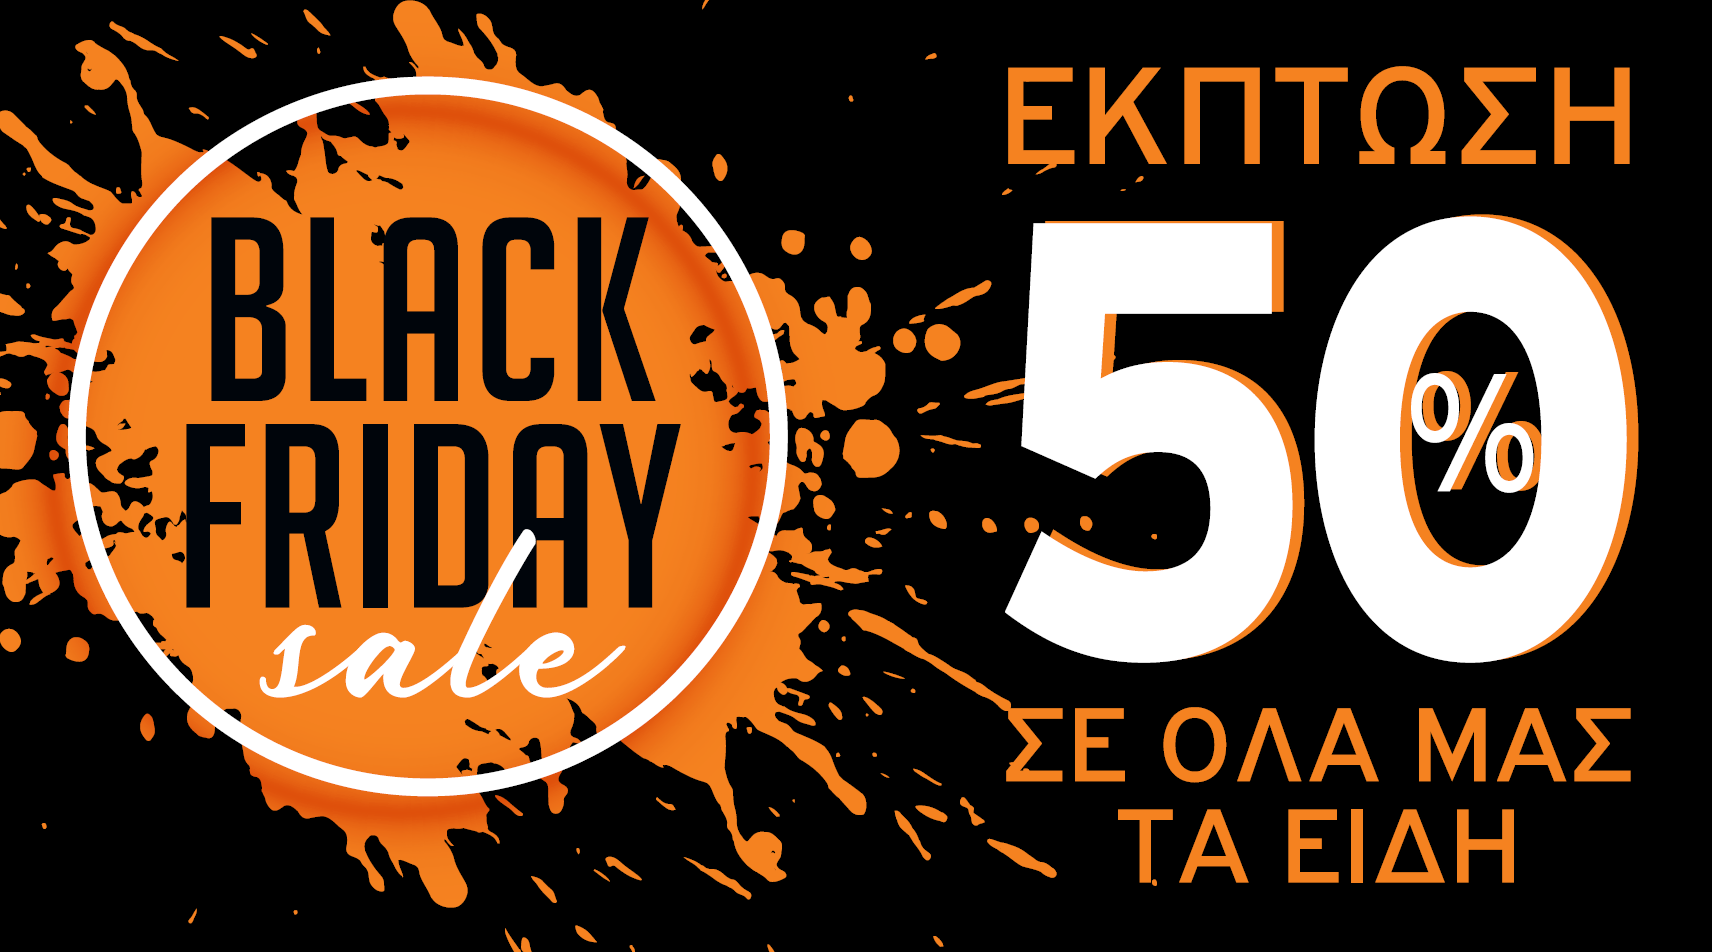 Black Friday στην Κέρκυρα. Δείτε τα καταστήματα που συμμετέχουν φέτος